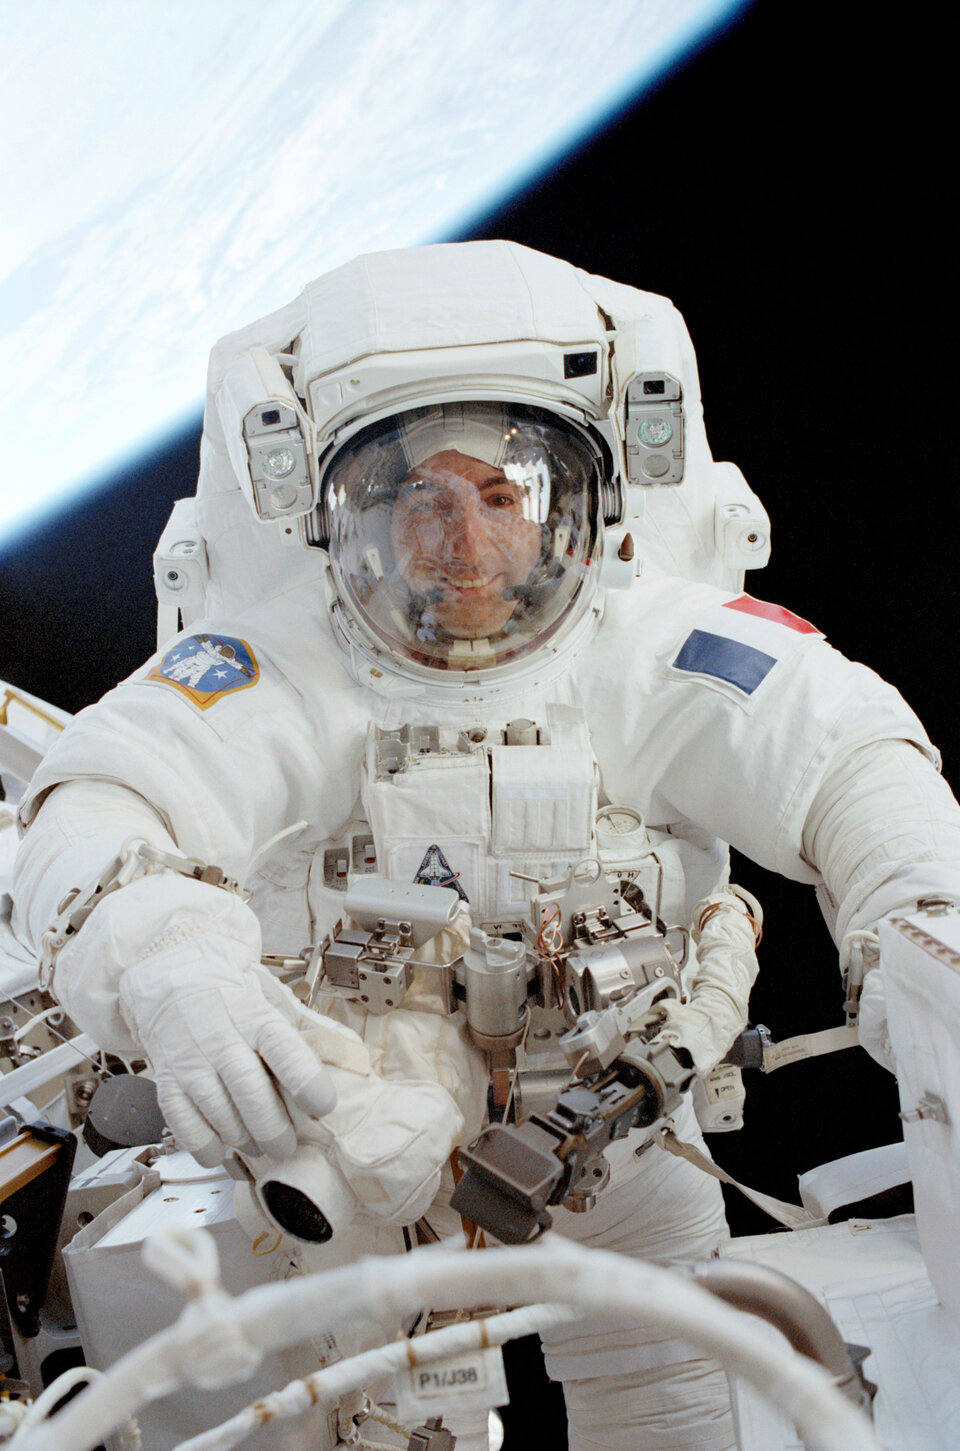 Am 3. August um 15.55 Uhr MESZ wird ESA-Astronaut Thomas Reiter die Internationale Raumstation (ISS) für einen sechseinhalbstündigen Außenbordeinsatz verlassen